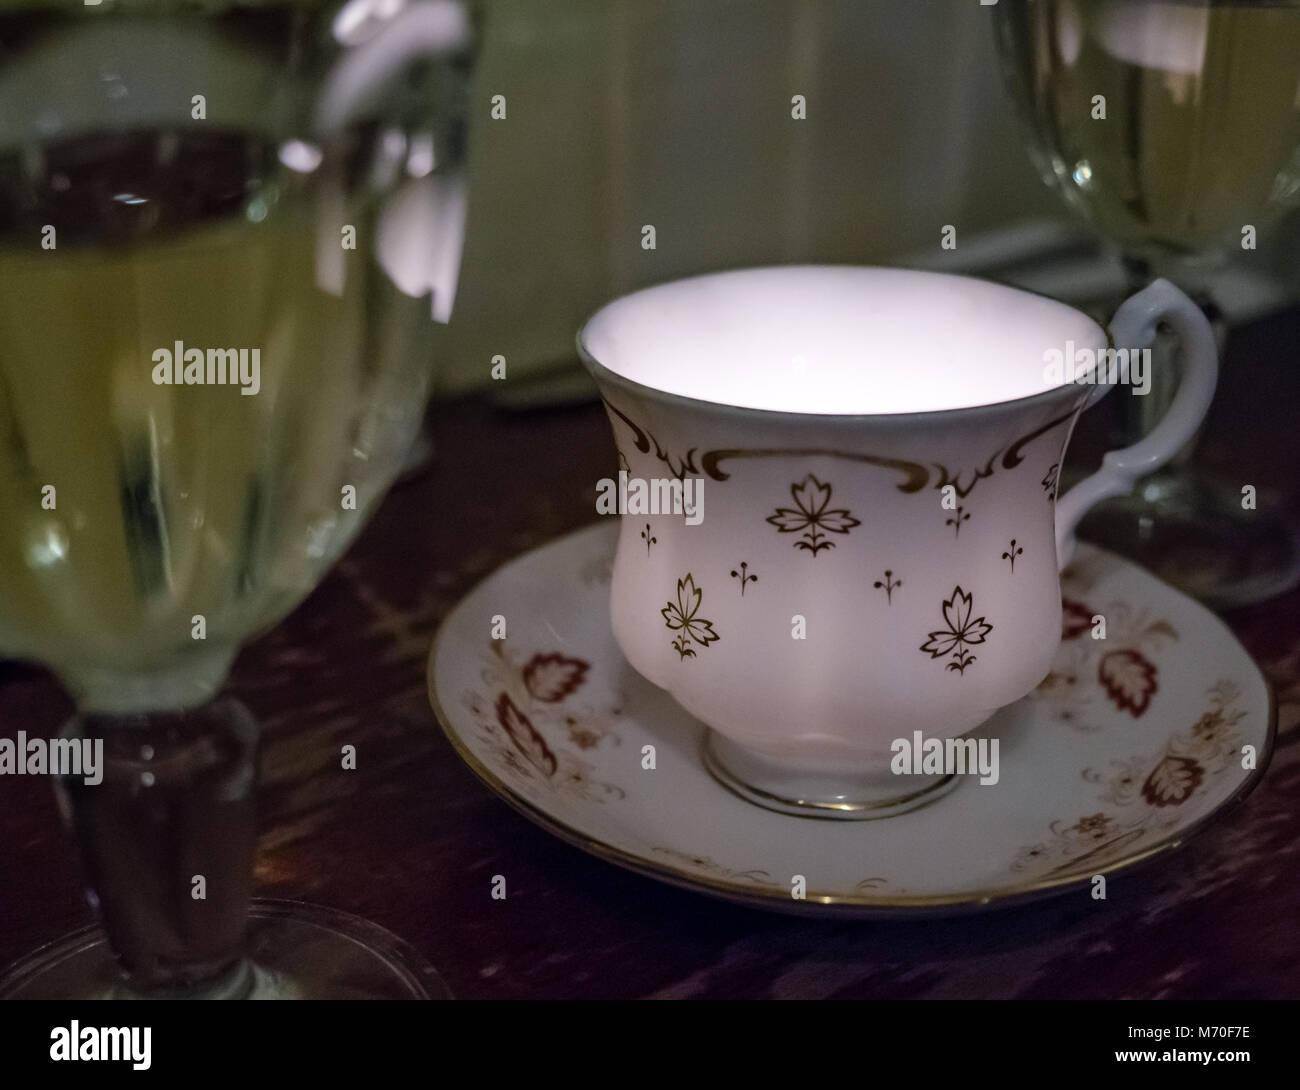 Close up della vecchia tazza da caffè con piattino con la luce di una candela, vino bianco in bicchieri, ristorante tavolo, Leith, Edimburgo, Scozia, Regno Unito Foto Stock